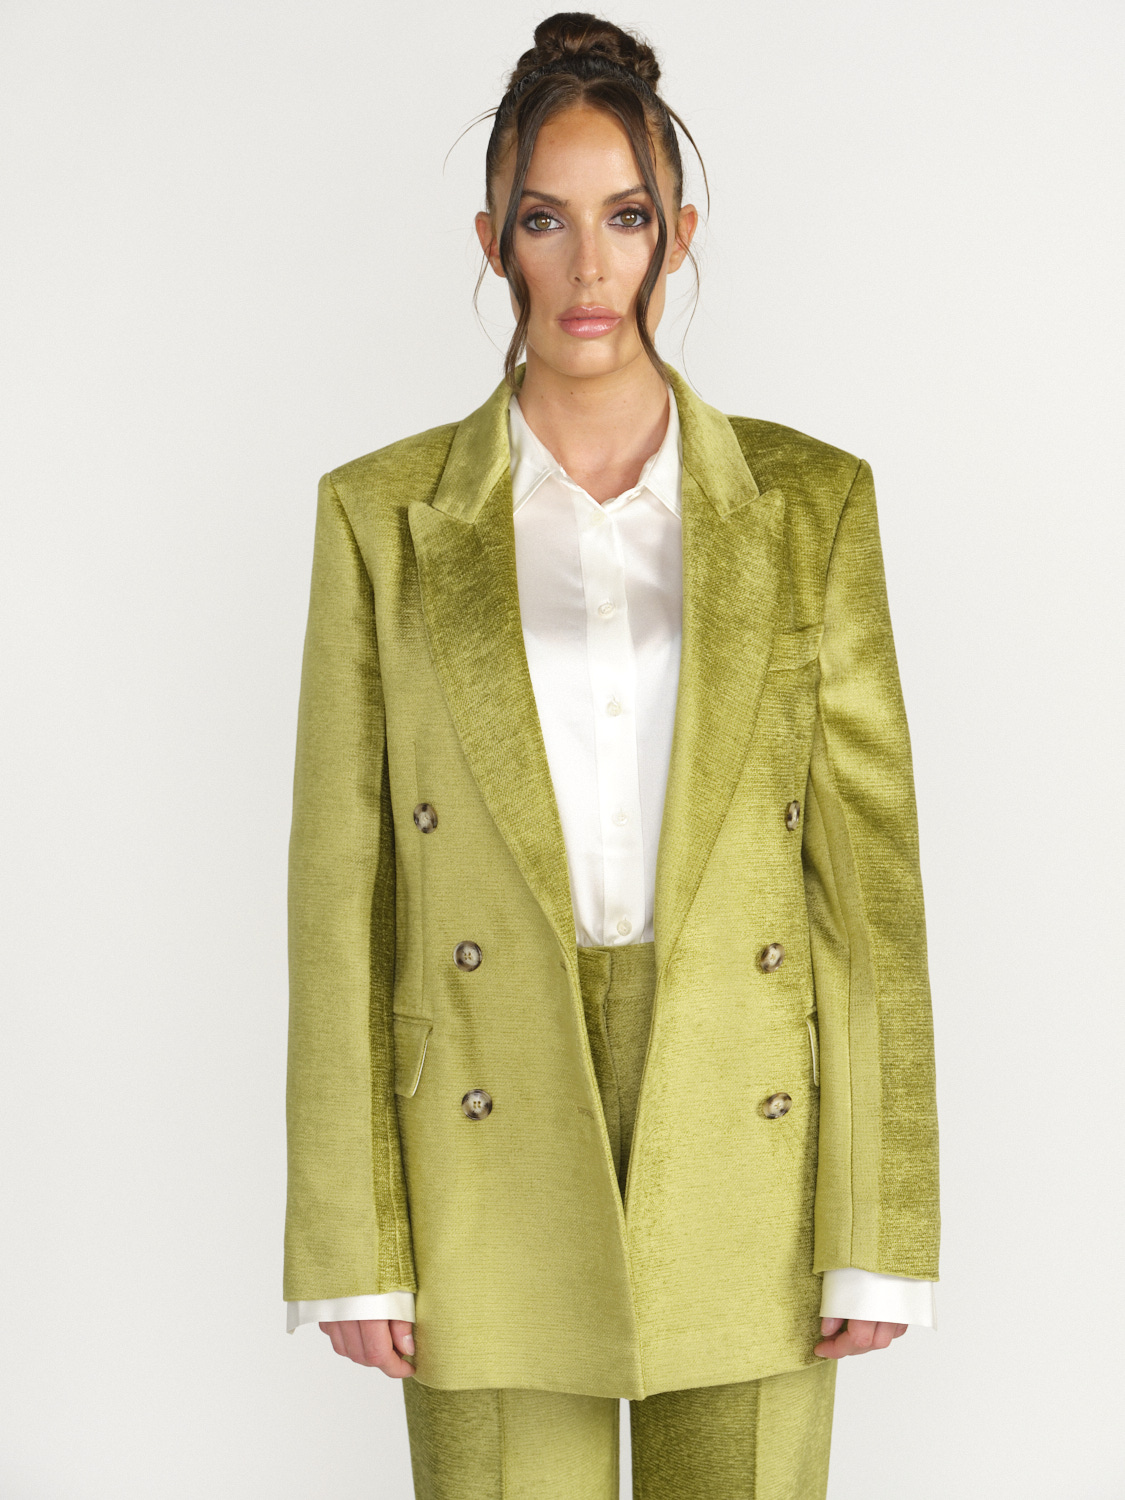 Victoria Beckham Lux Chenille Blazer - Double Breasted Blazer  green 36